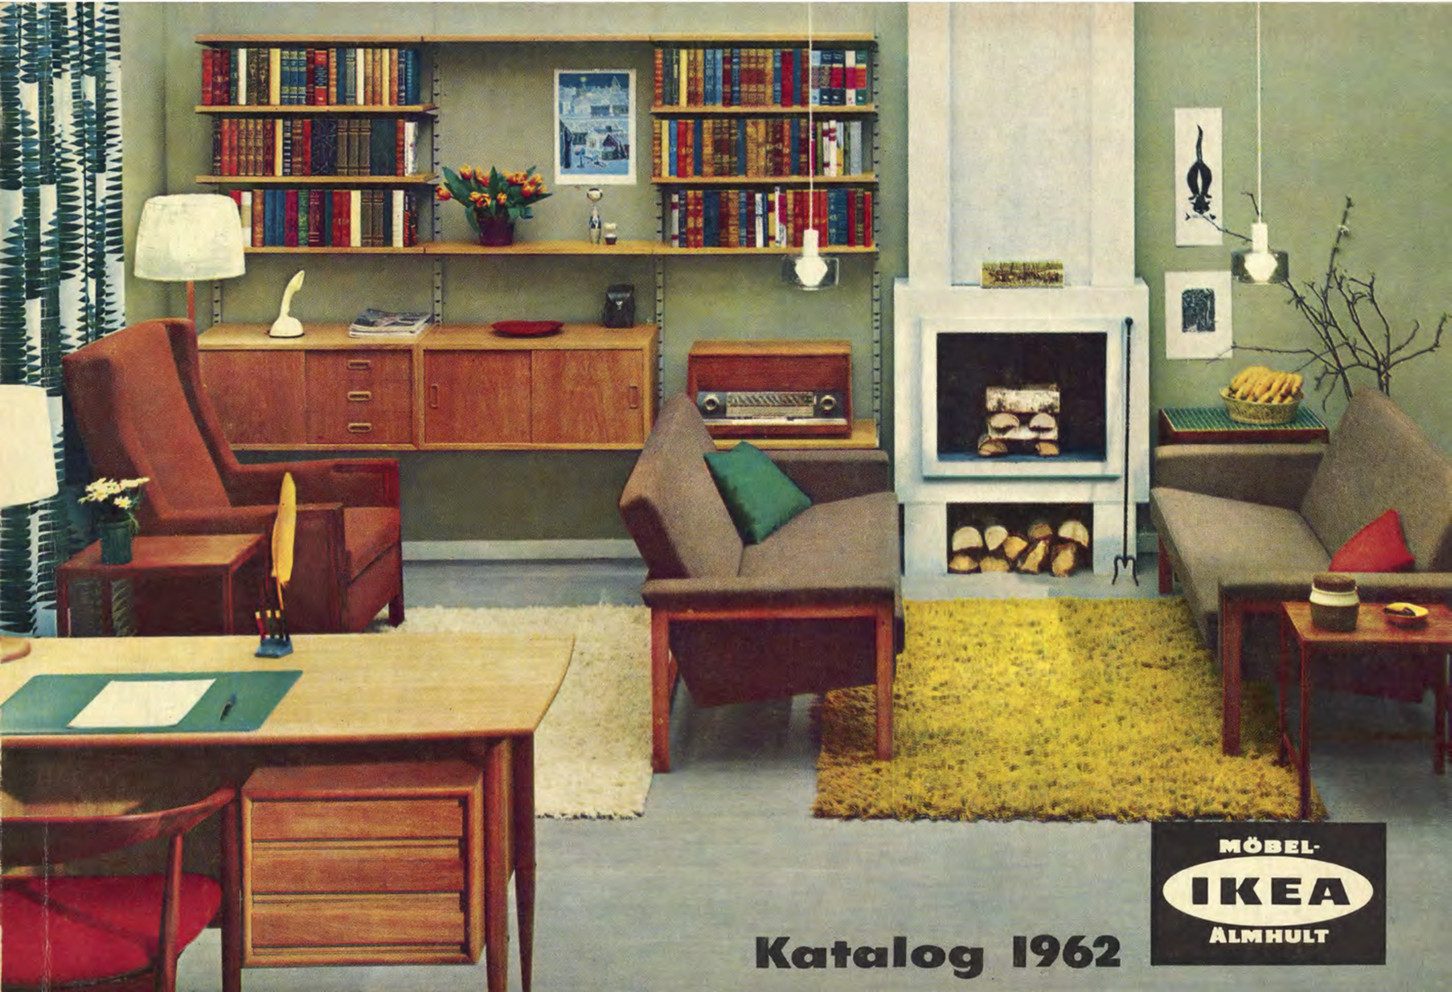 Auszug aus dem IKEA-Katalog von 1962, die Möbel sind in wohnliches Setting gebettet. Aus dem Text: Storytelling Close-Up IKEA.